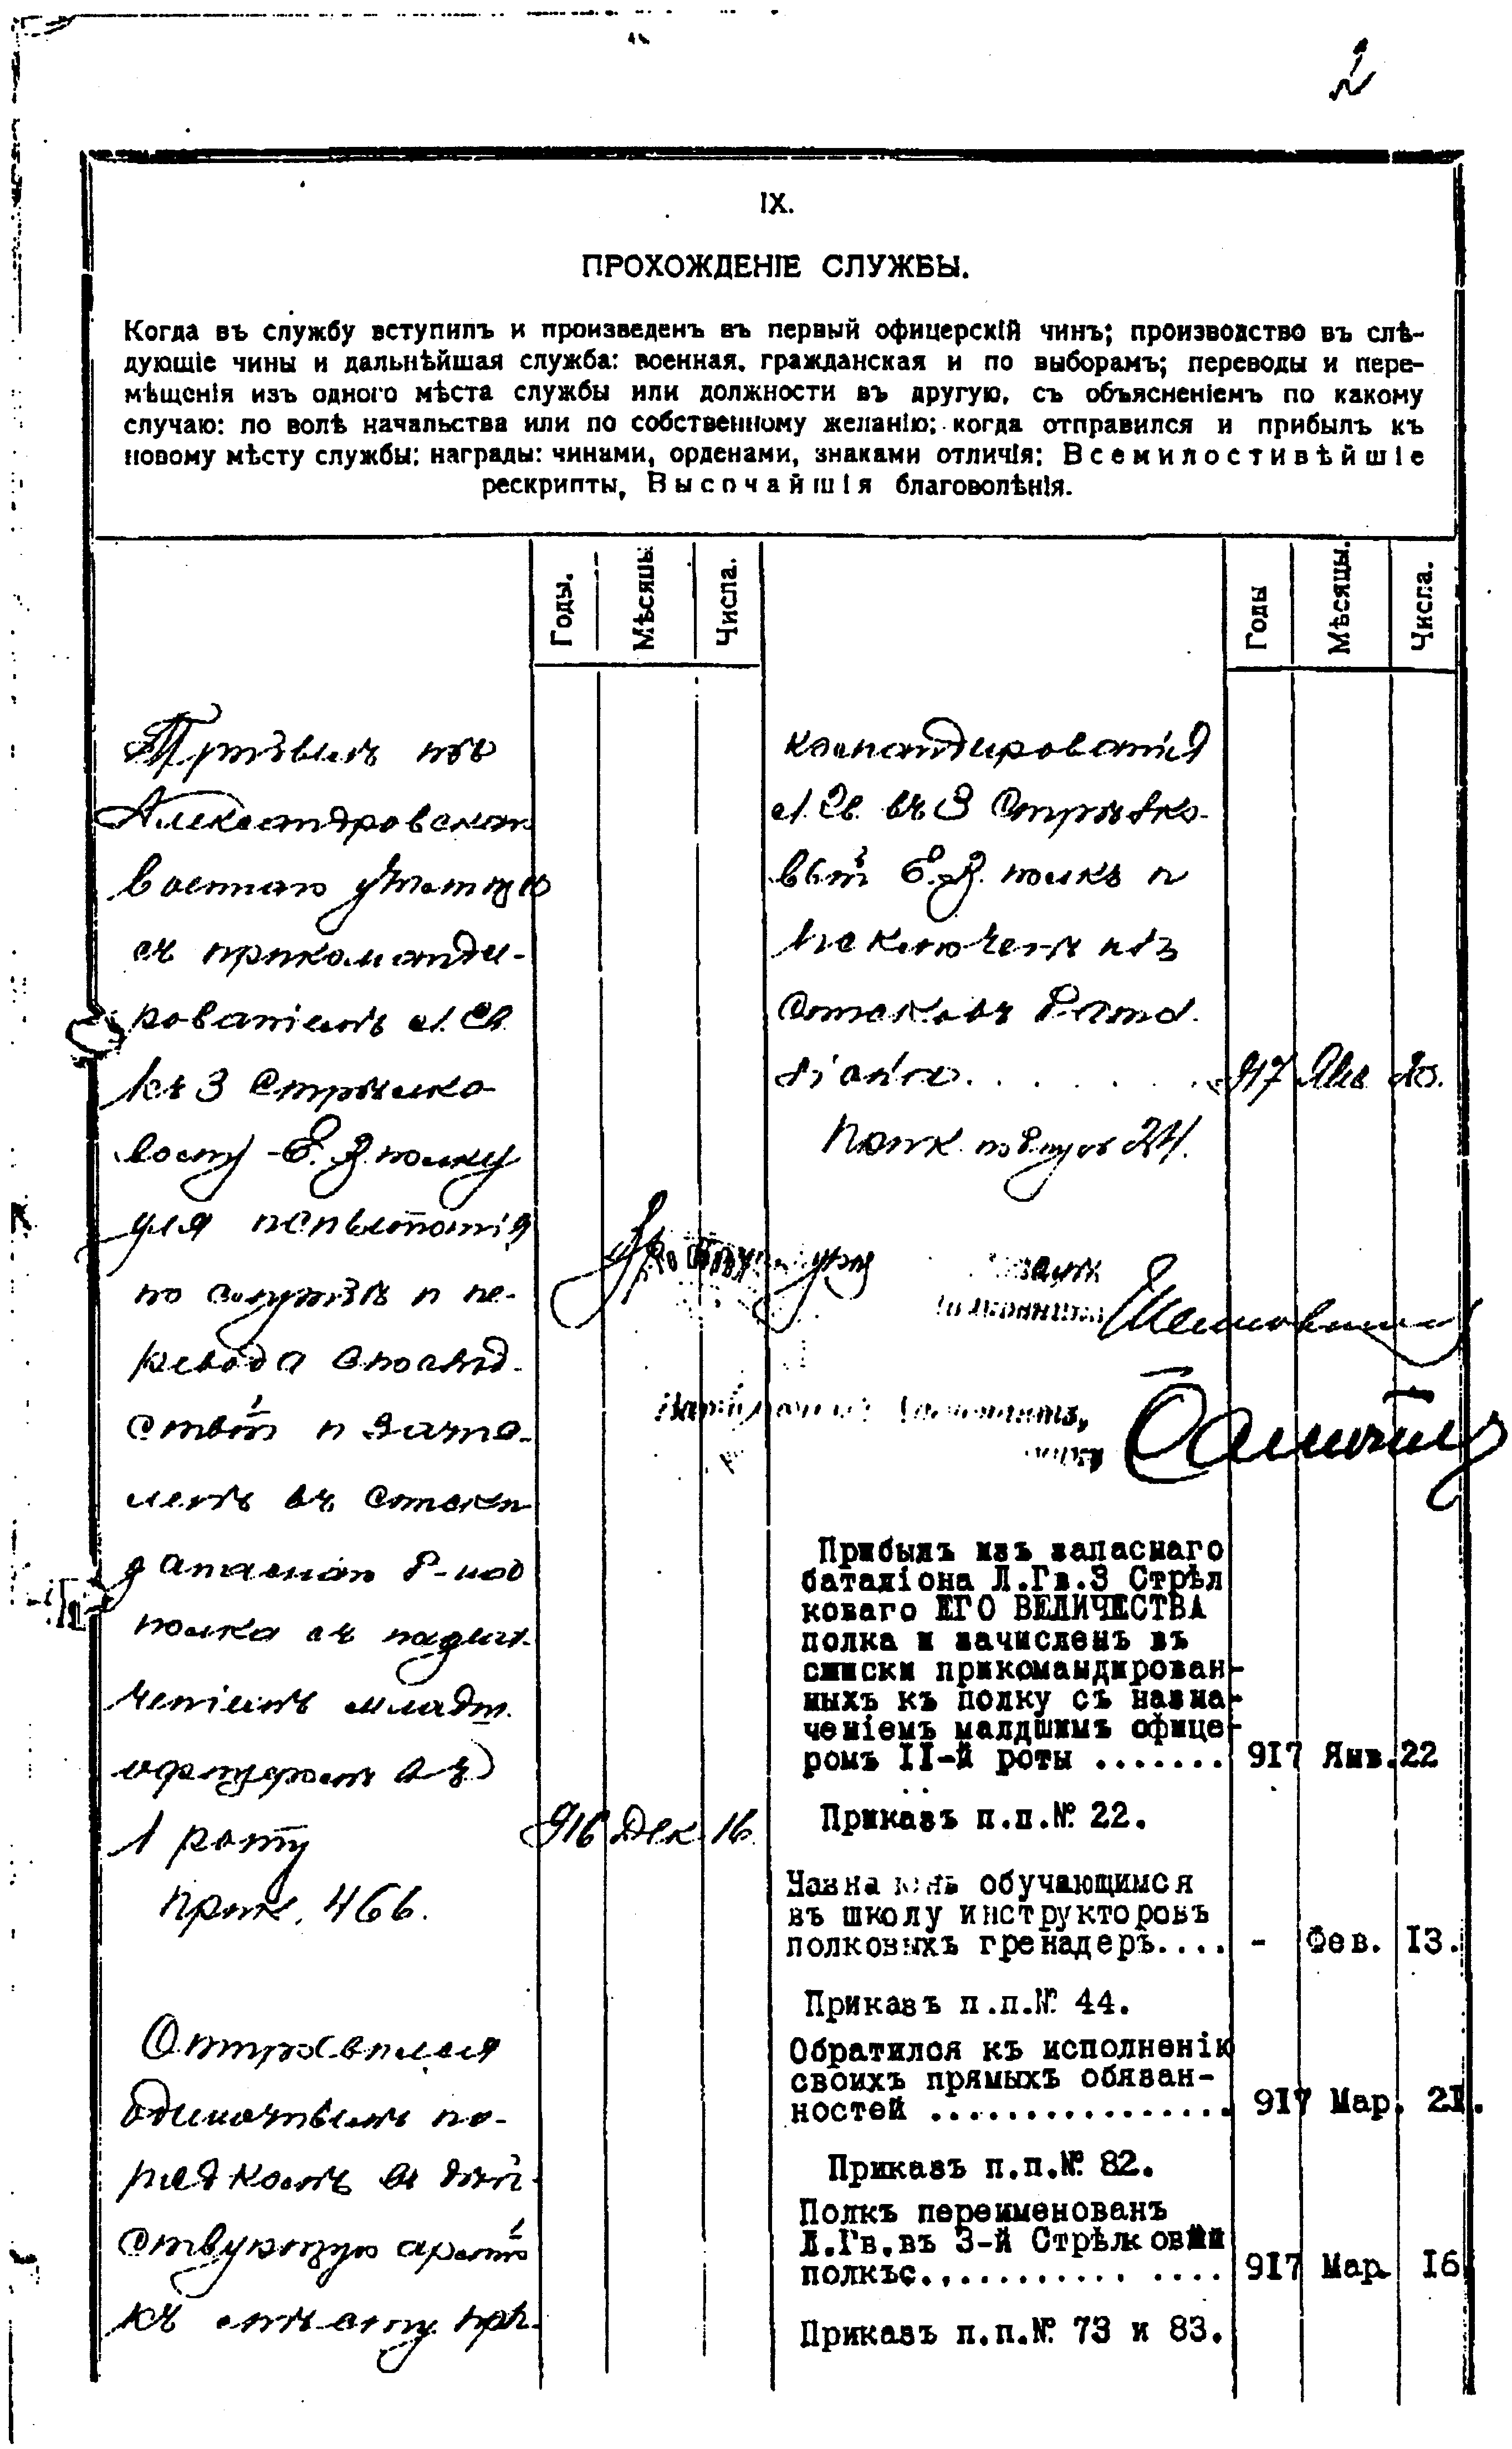 Документы к биографии Ю.Л. Гладыревского. Послужной список 1917 года